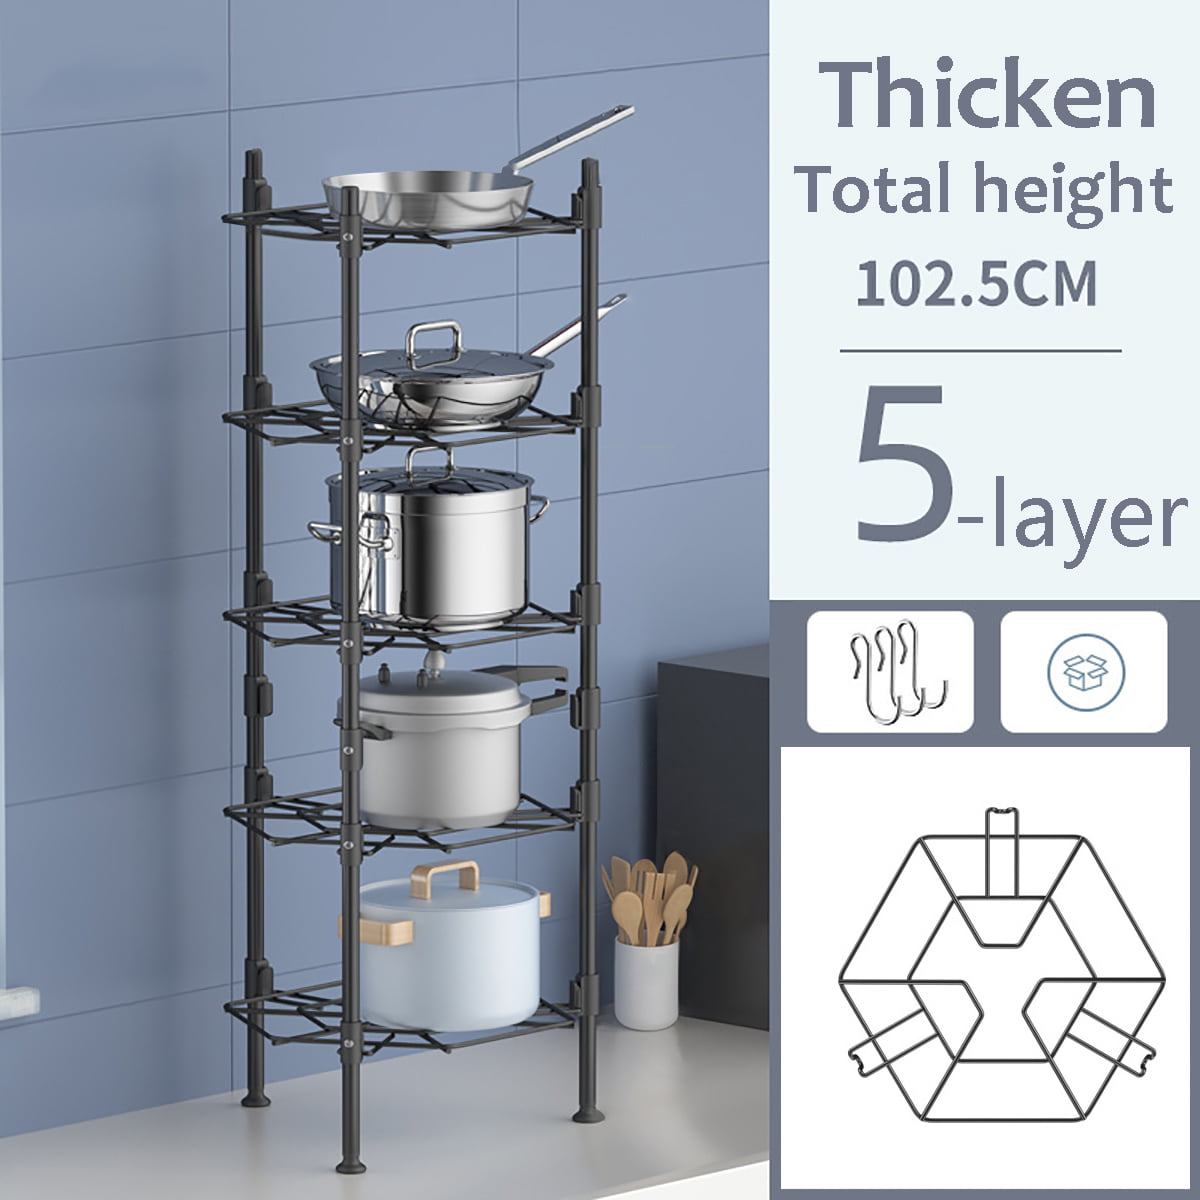 Chrome Kitchen 3/5 Tier Pot Pan Saucepan Rack Holder Organiser Stand Tidy Shelf